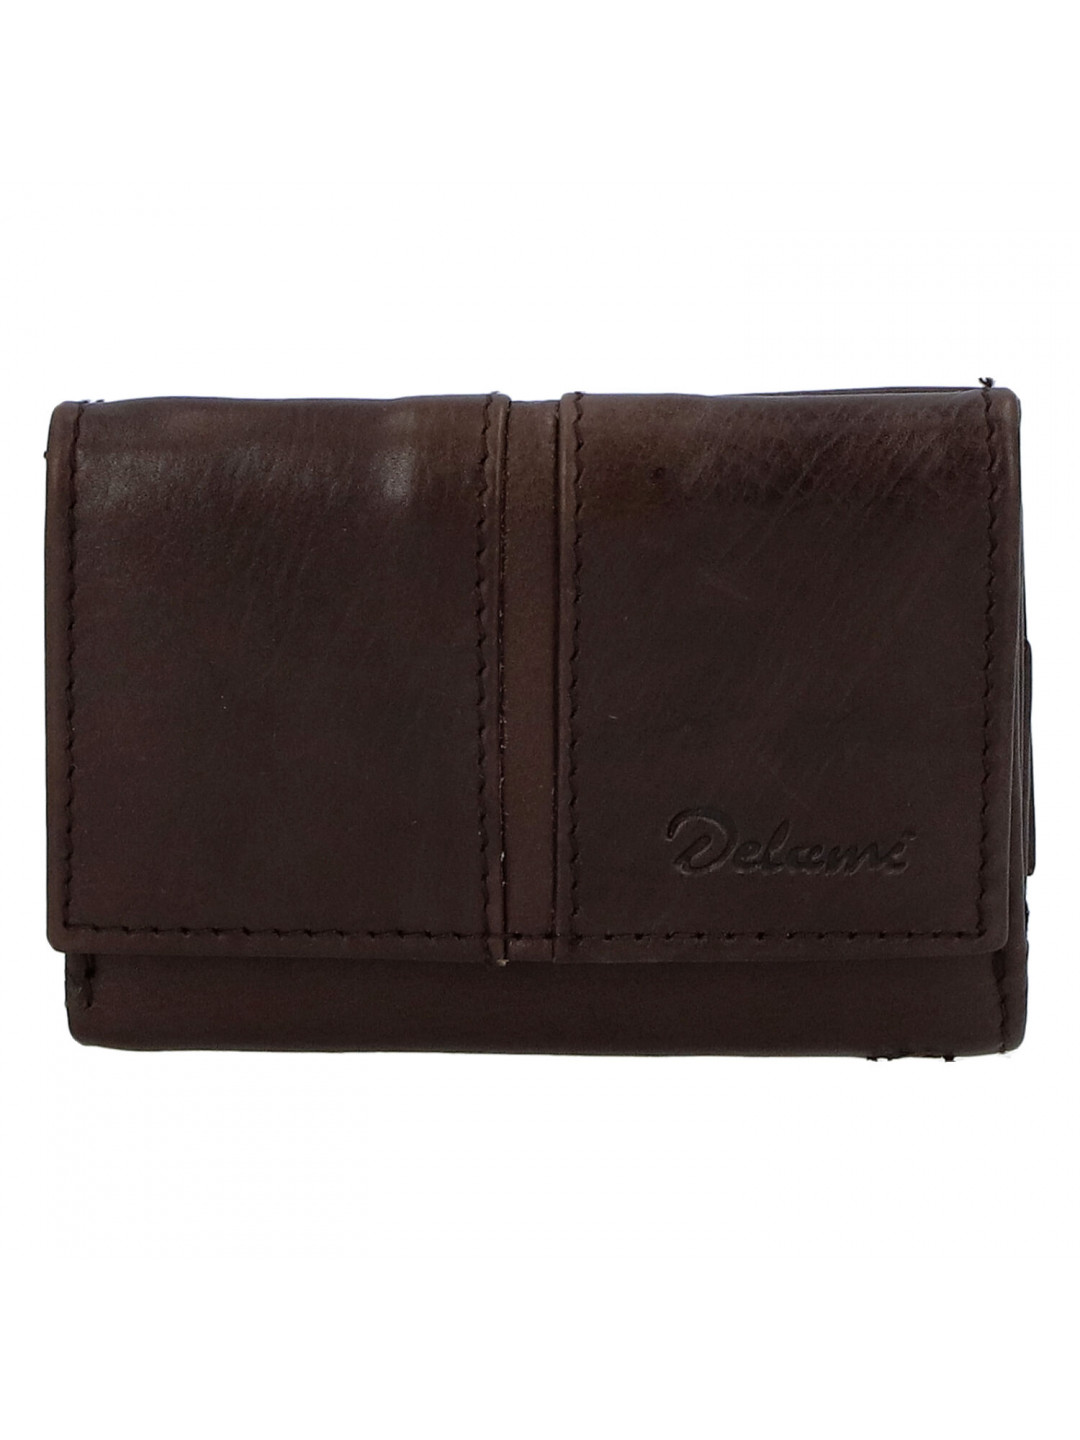 Kožená tmavě hnědá peněženka – Delami 9386